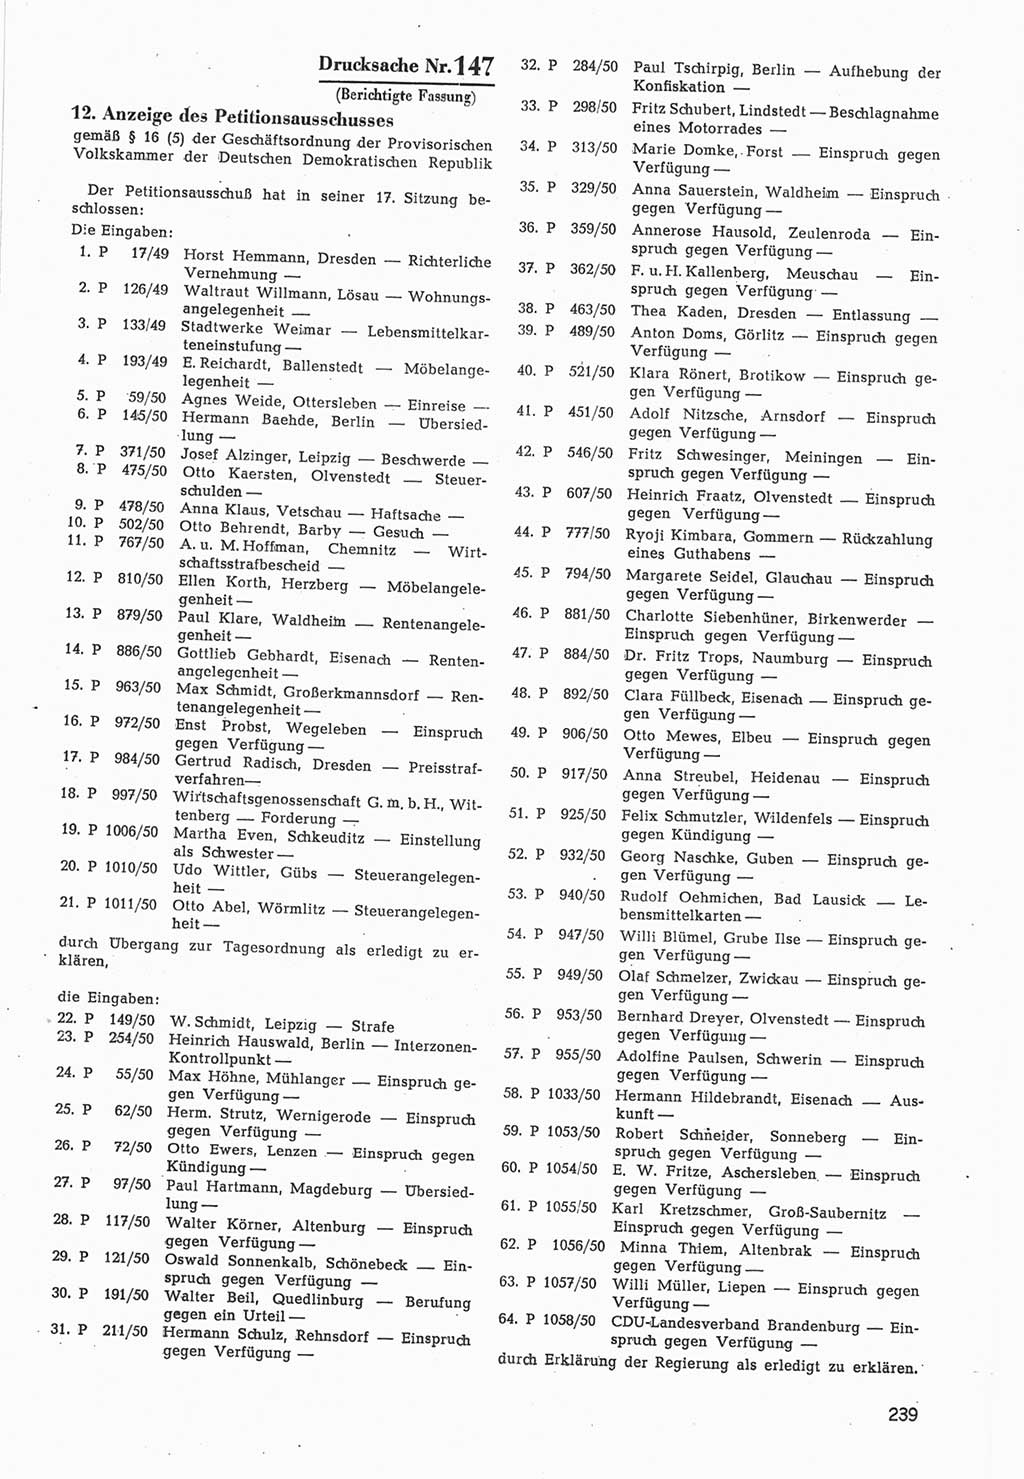 Provisorische Volkskammer (VK) der Deutschen Demokratischen Republik (DDR) 1949-1950, Dokument 841 (Prov. VK DDR 1949-1950, Dok. 841)